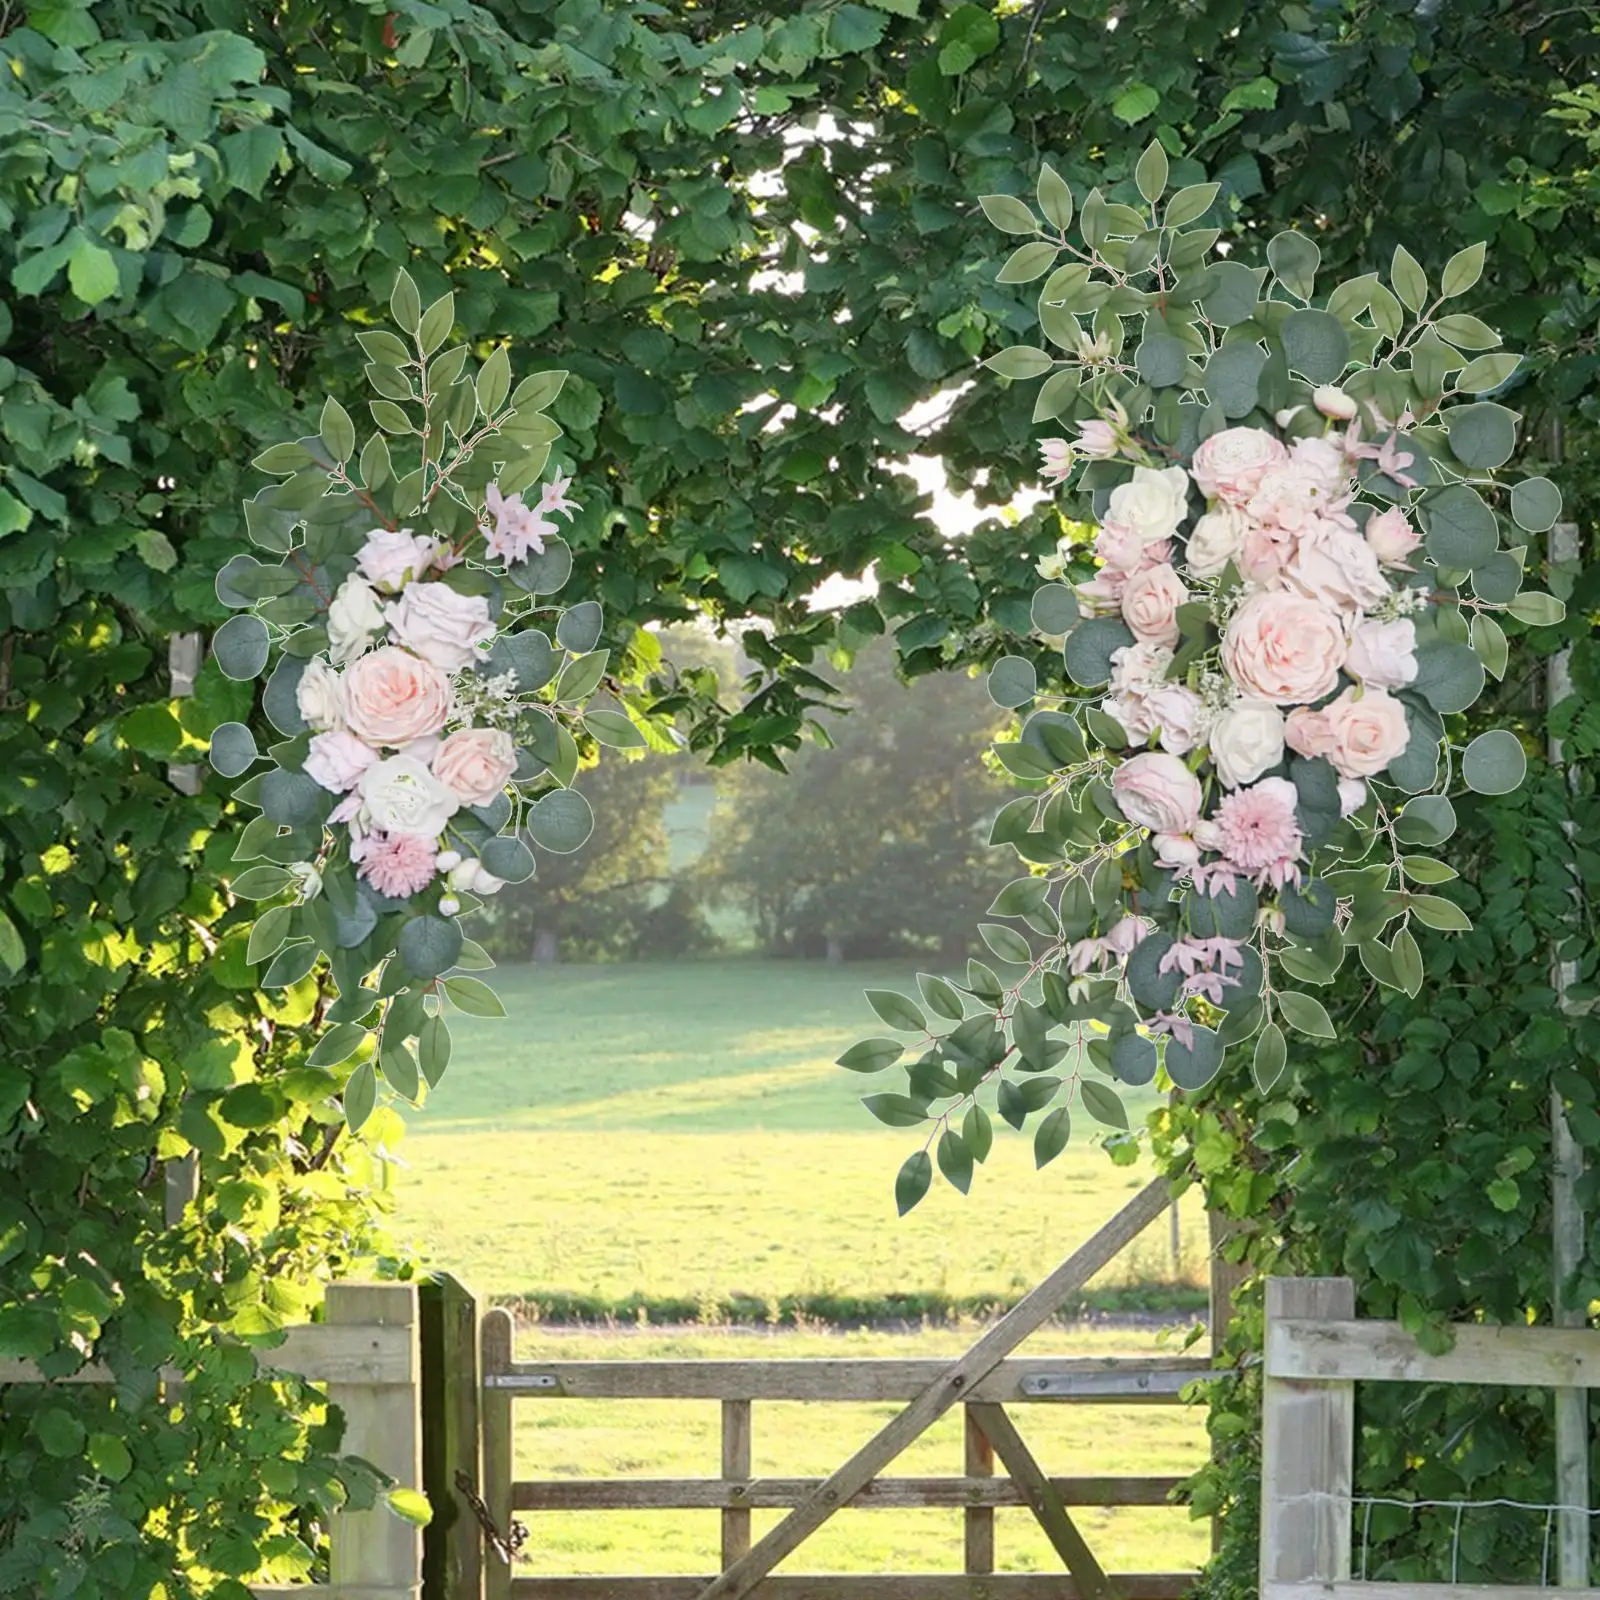 2x Wedding Arch Flower Door Wreath Arbor Artificial Floral Swag